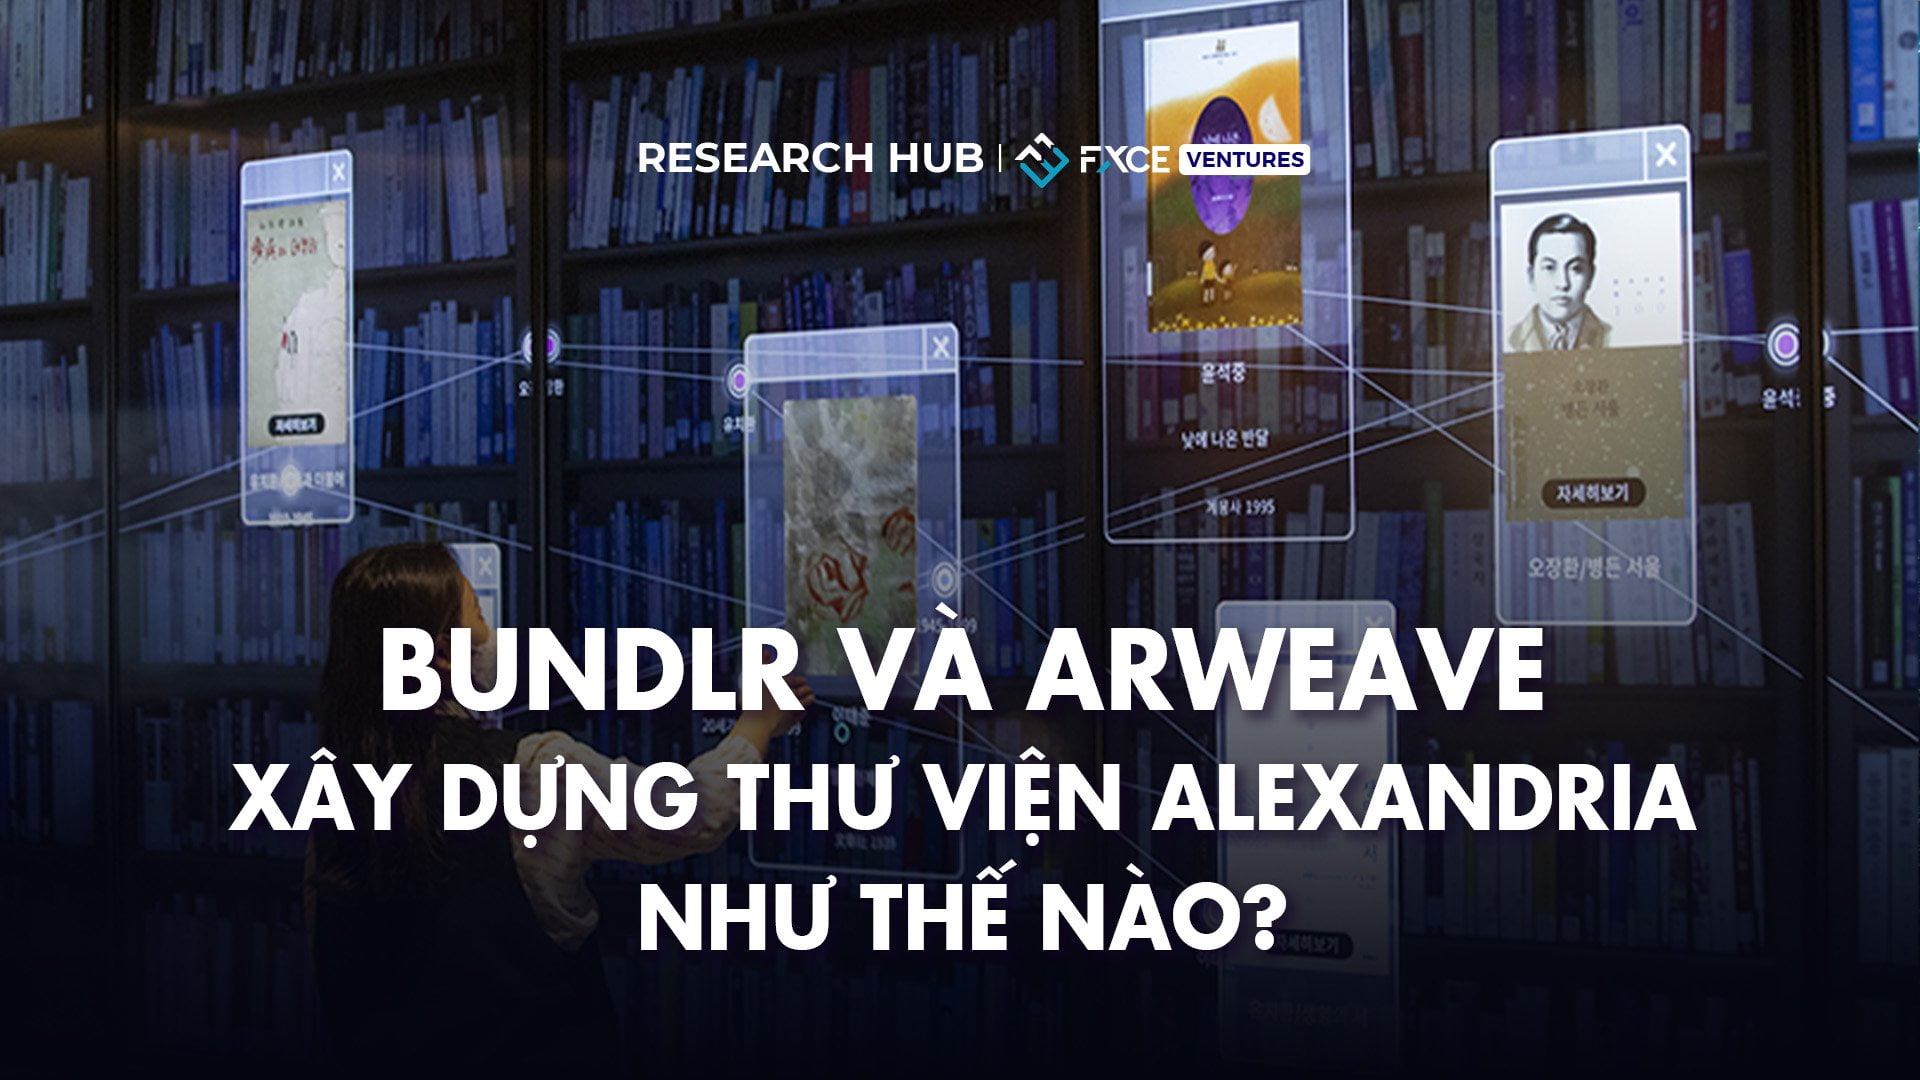 Bundlr và Arweave xây dựng Thư viện Alexandria như thế nào?